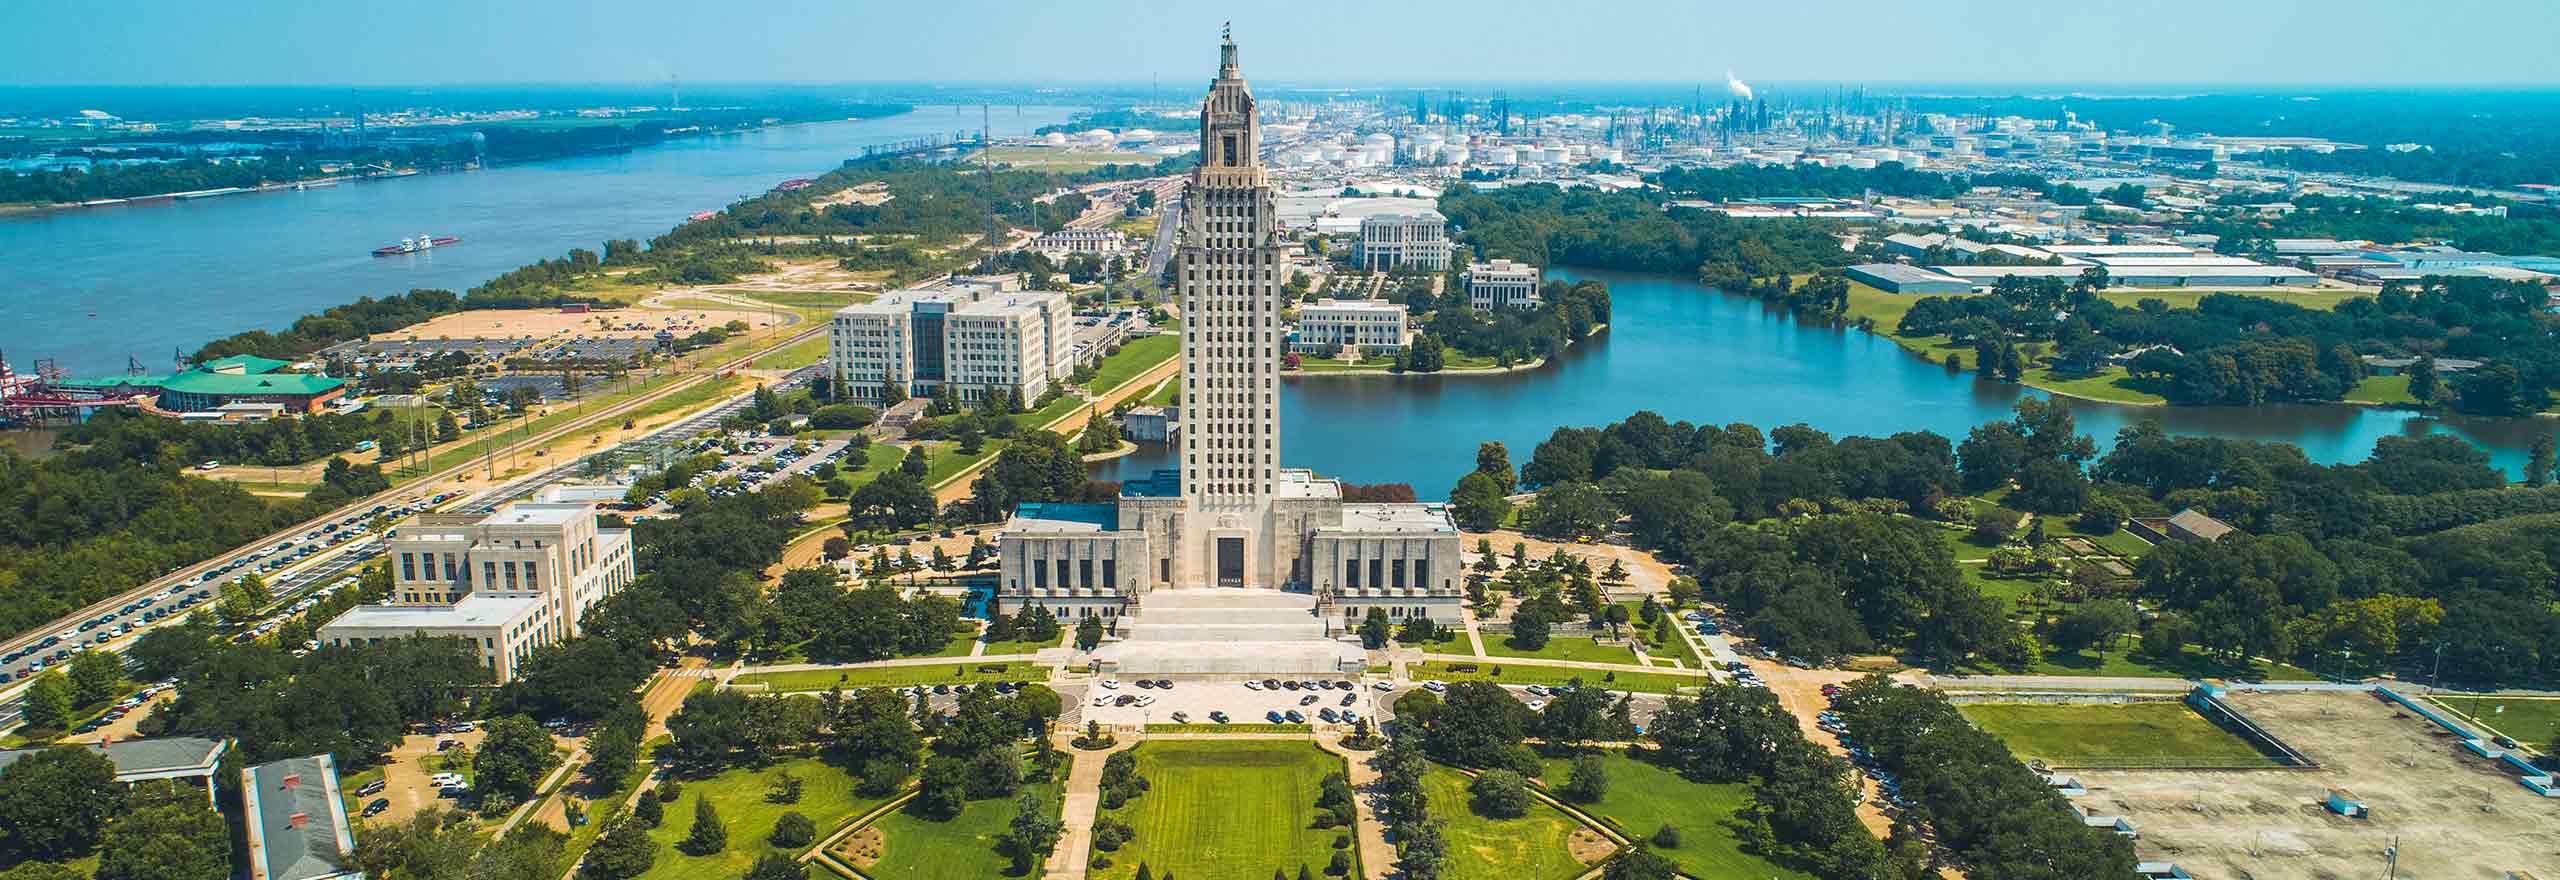 Foto aérea de drone do State Capitol Park em Baton Rouge, Louisiana